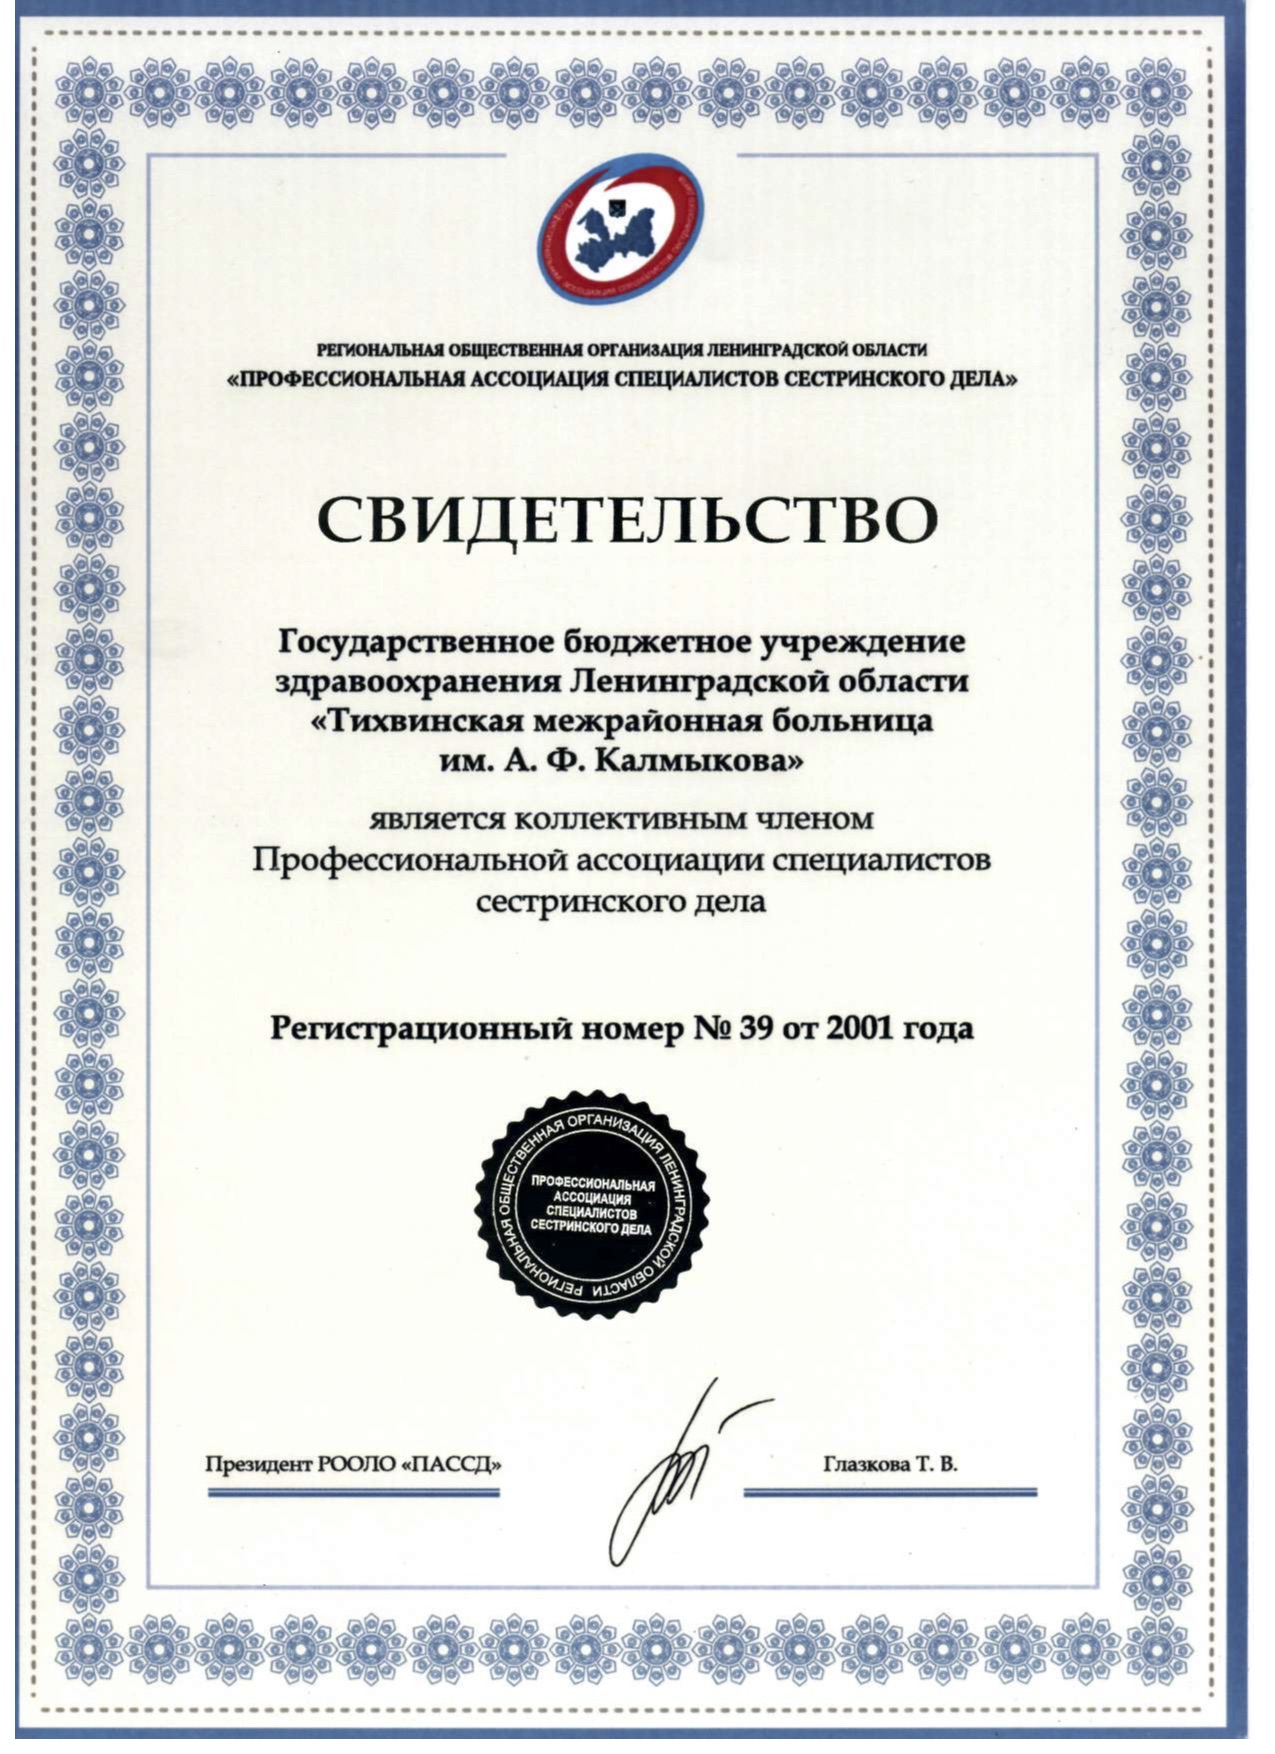 ГБУЗ ЛО "Тихвинская МБ": сертификат